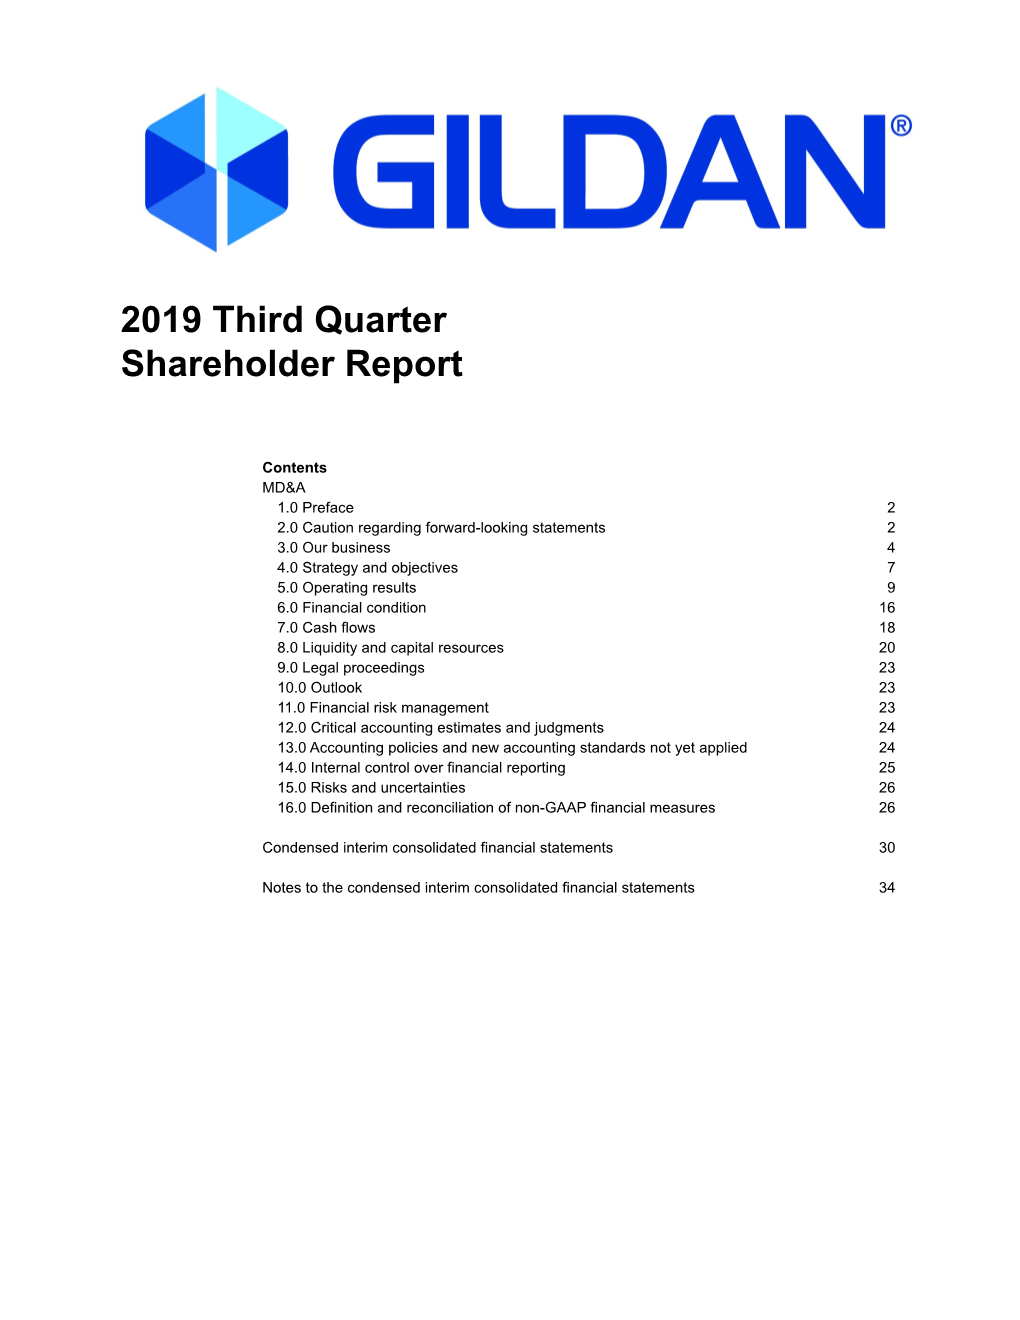 Gildan Q3 2019 Shareholder Report